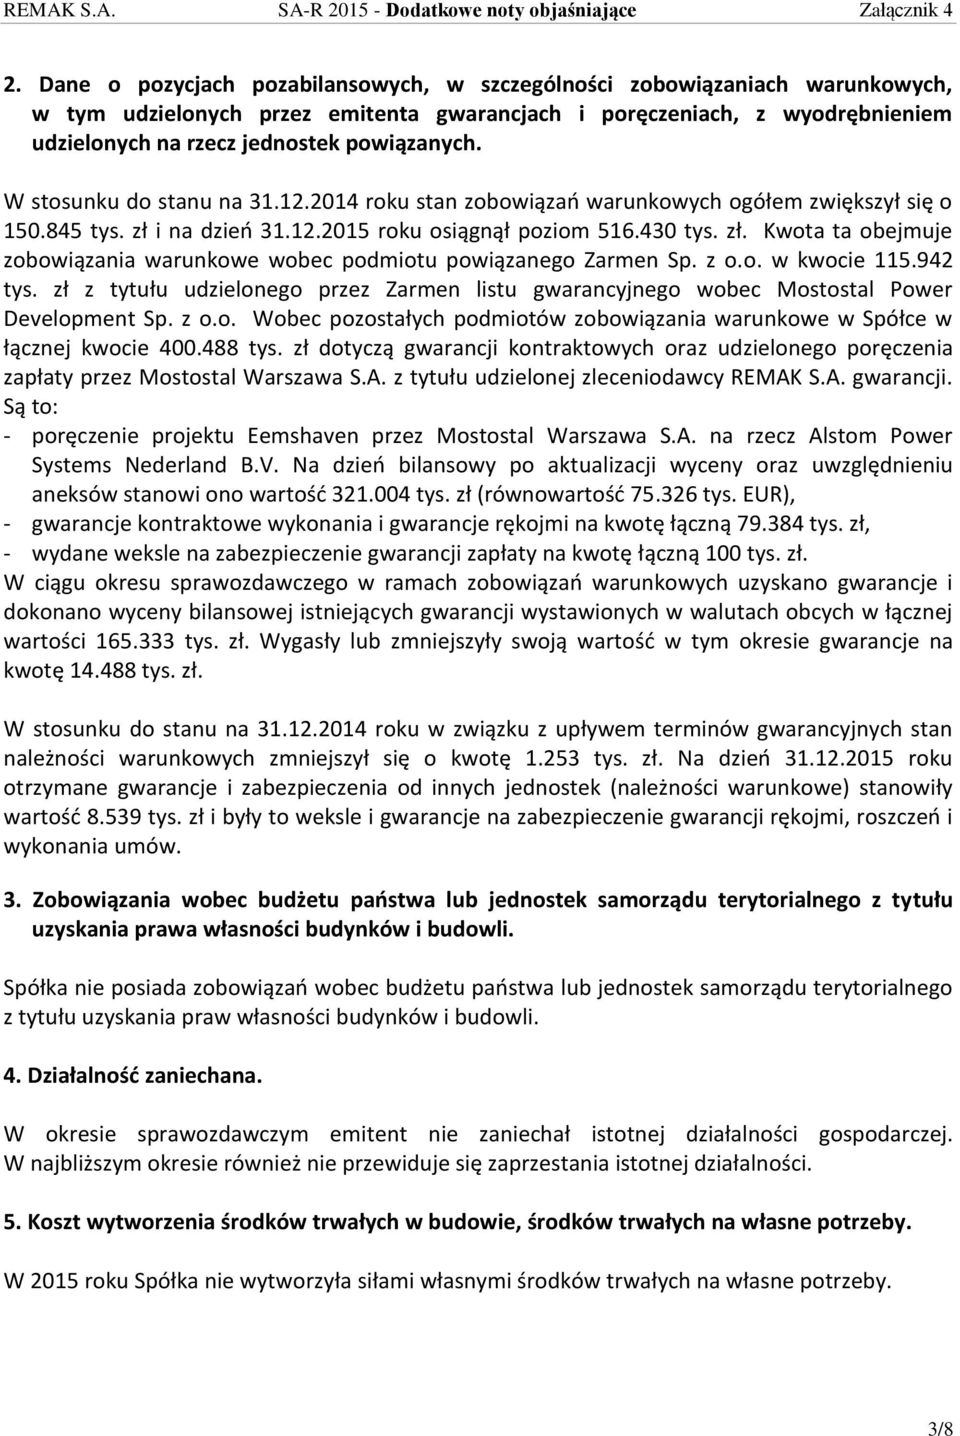 z o.o. w kwocie 115.942 tys. zł z tytułu udzielonego przez Zarmen listu gwarancyjnego wobec Mostostal Power Development Sp. z o.o. Wobec pozostałych podmiotów zobowiązania warunkowe w Spółce w łącznej kwocie 400.